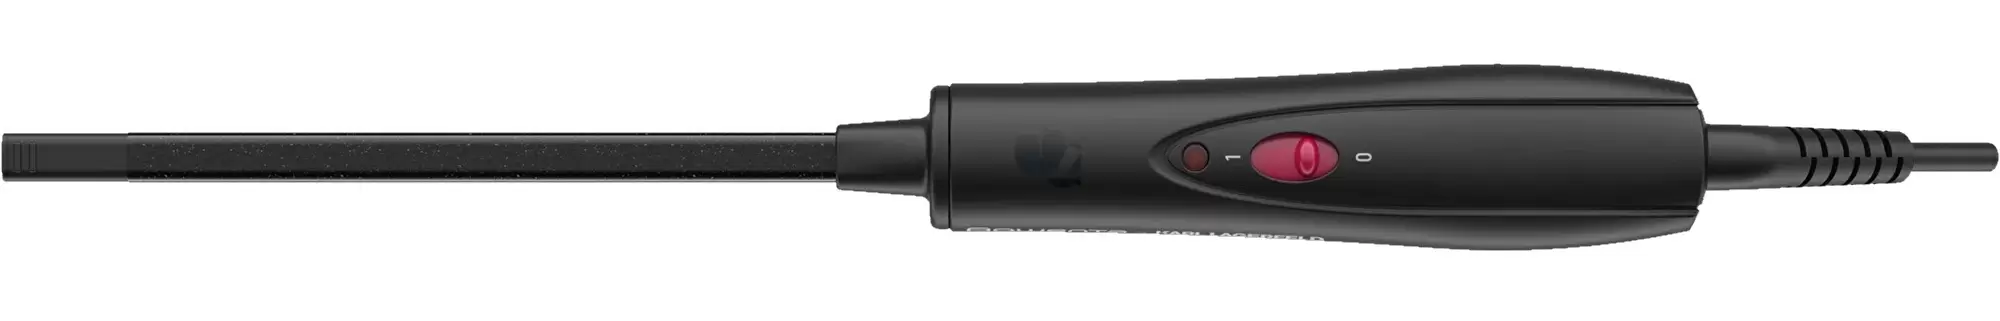 Прибор для укладки Rowenta CF311LF0, черный